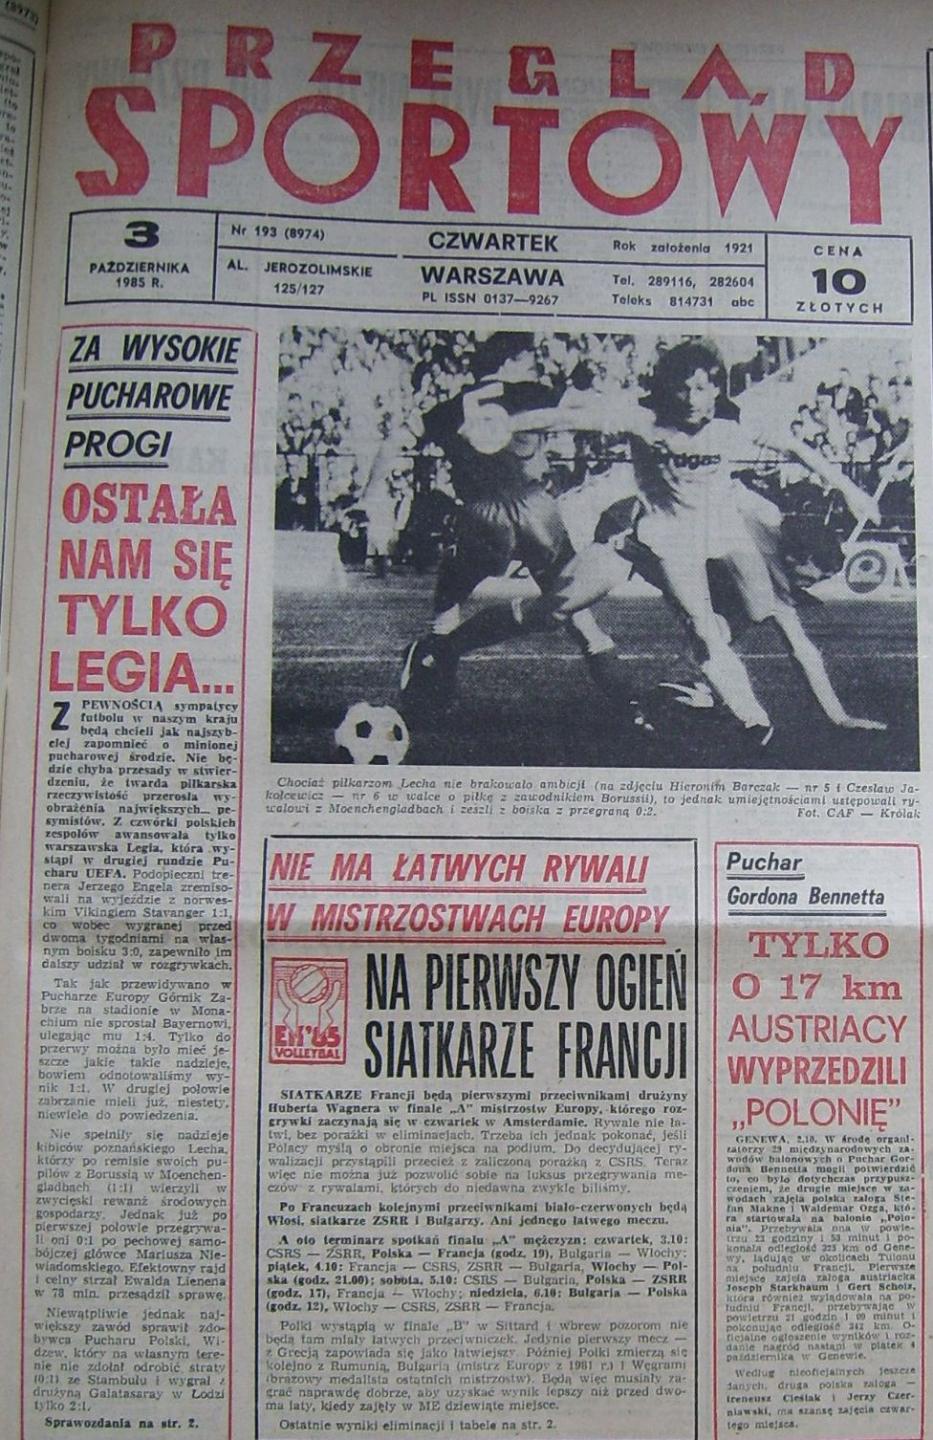 Lech Poznań – Borussia Mönchengladbach 0:2 (02.10.1985) Przegląd Sportowy